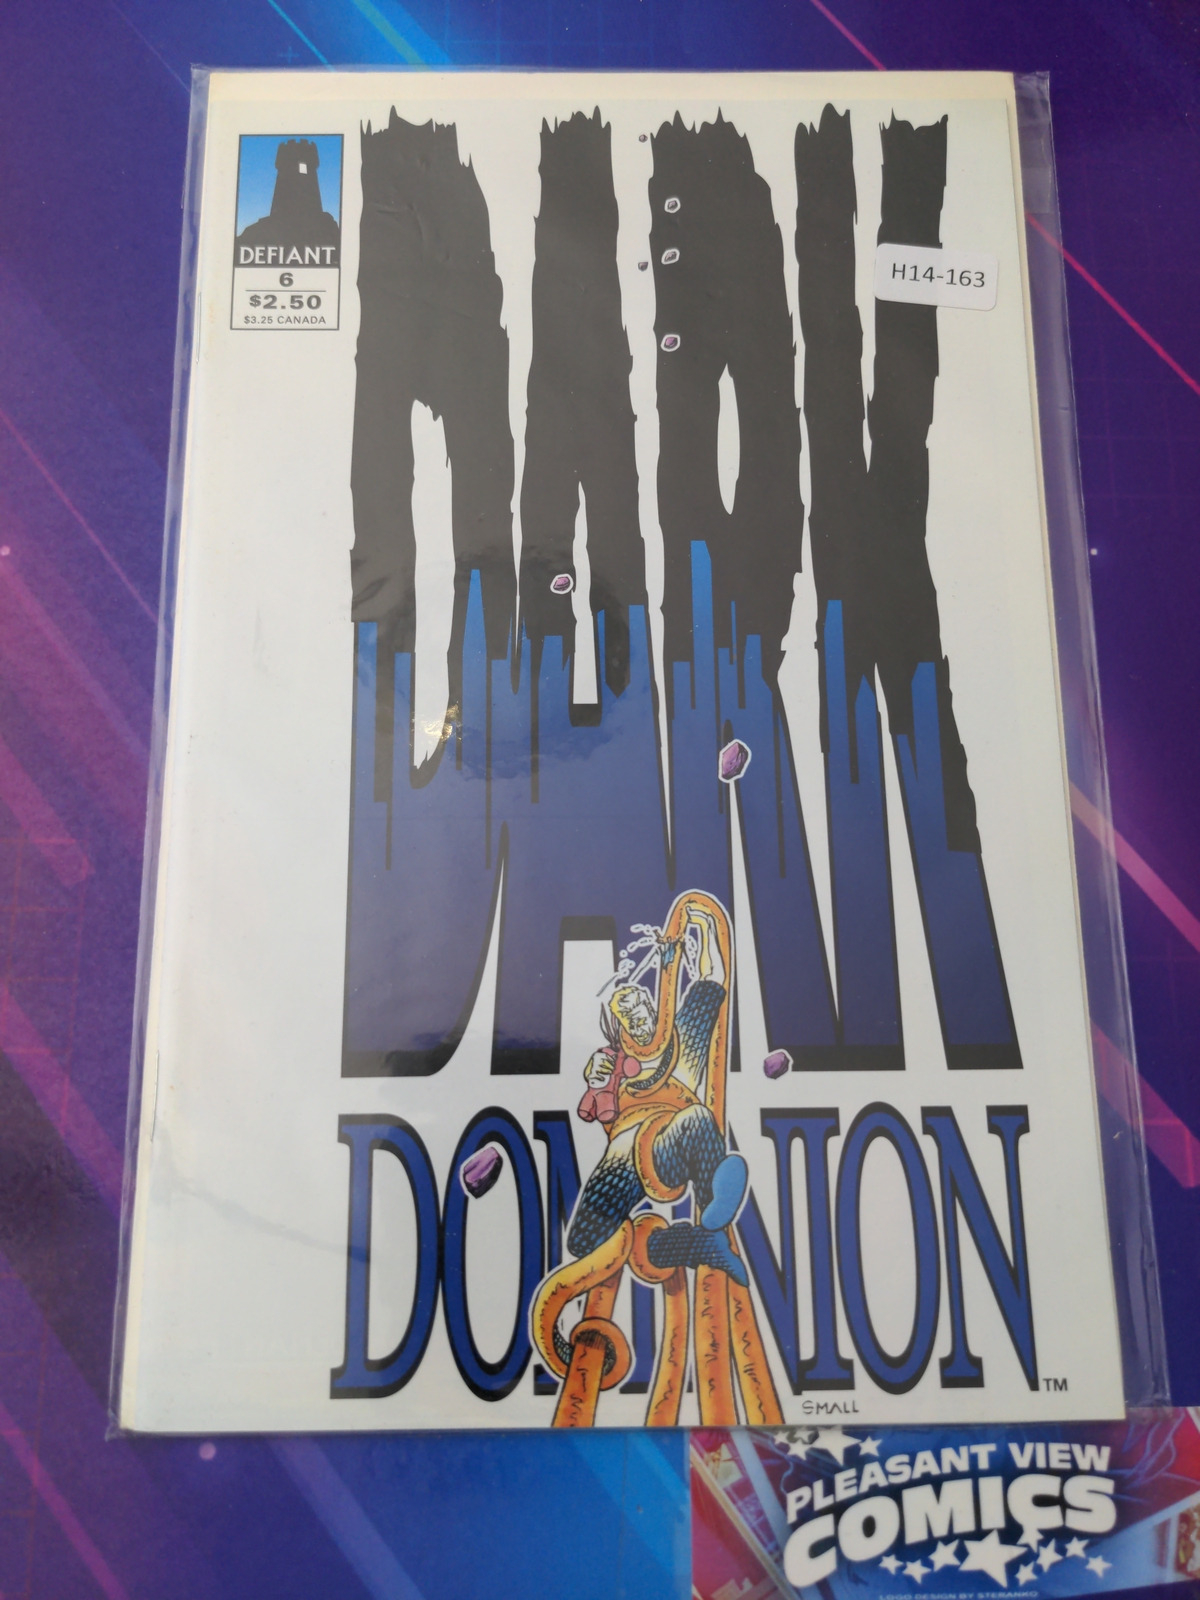 DARK DOMINION #6 HIGH GRADE DEFIANT COMIC BOOK H14-163